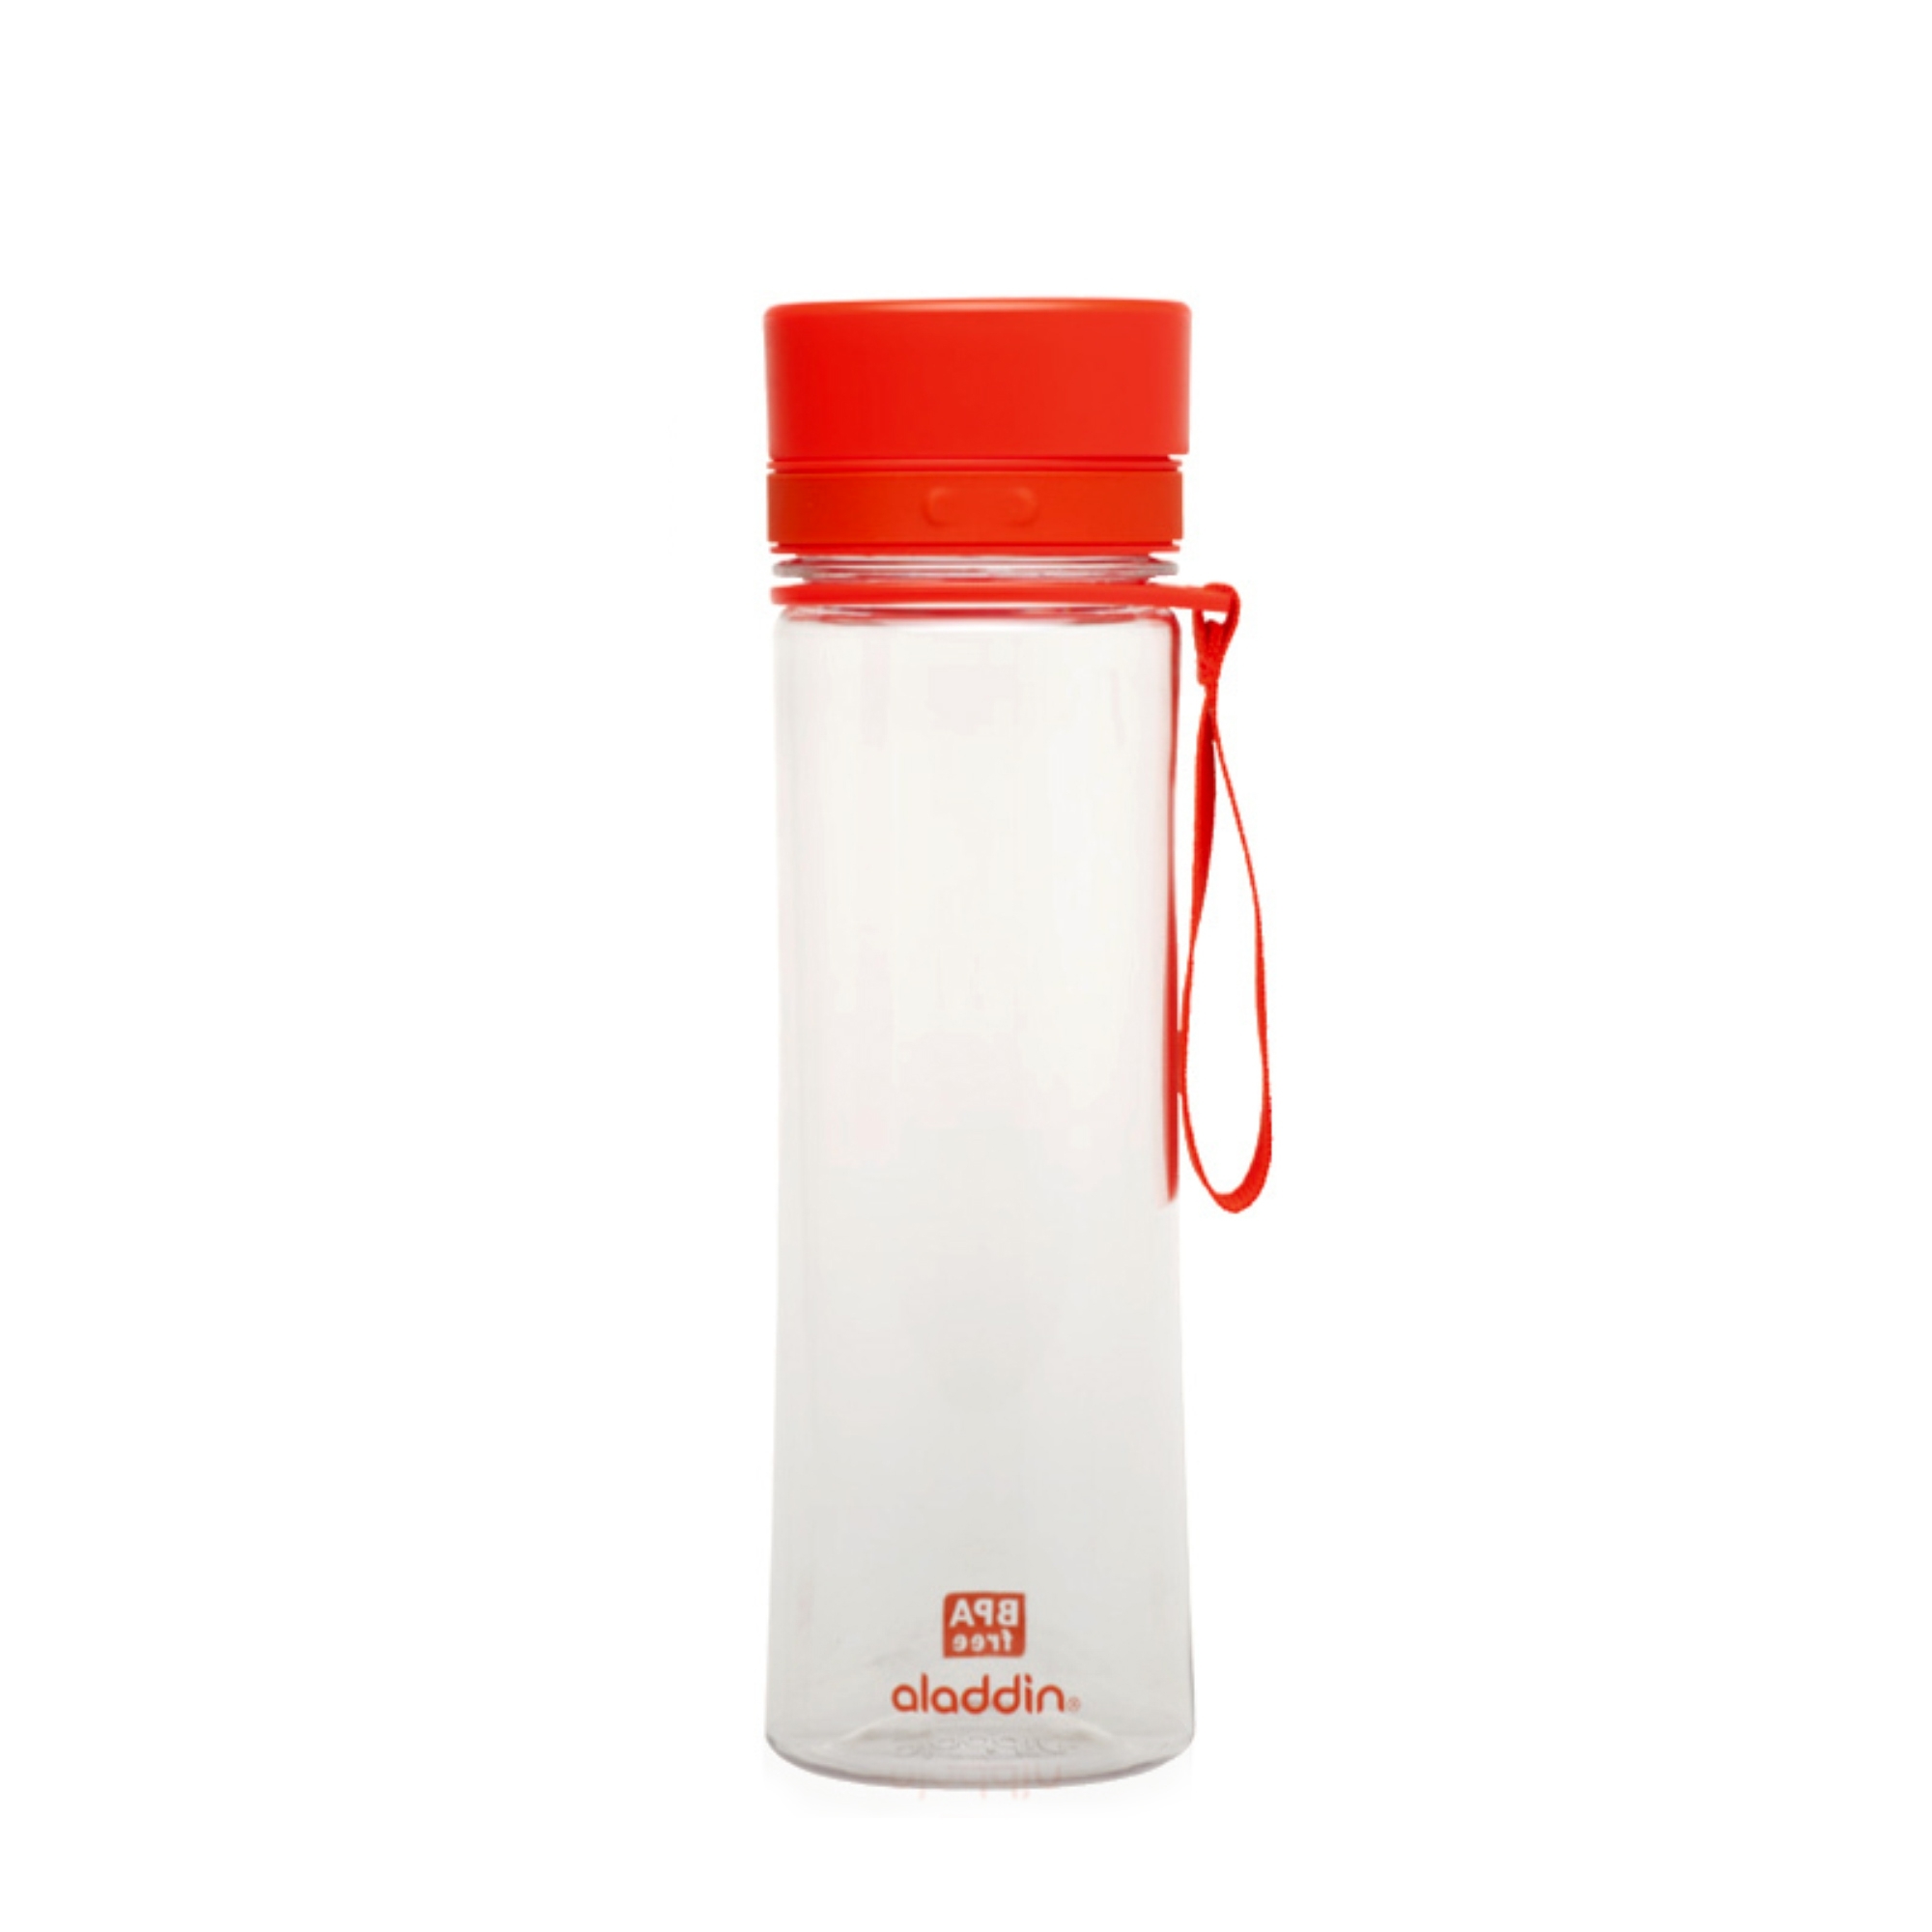 aladdin - Wasserflasche - 0,6 Liter